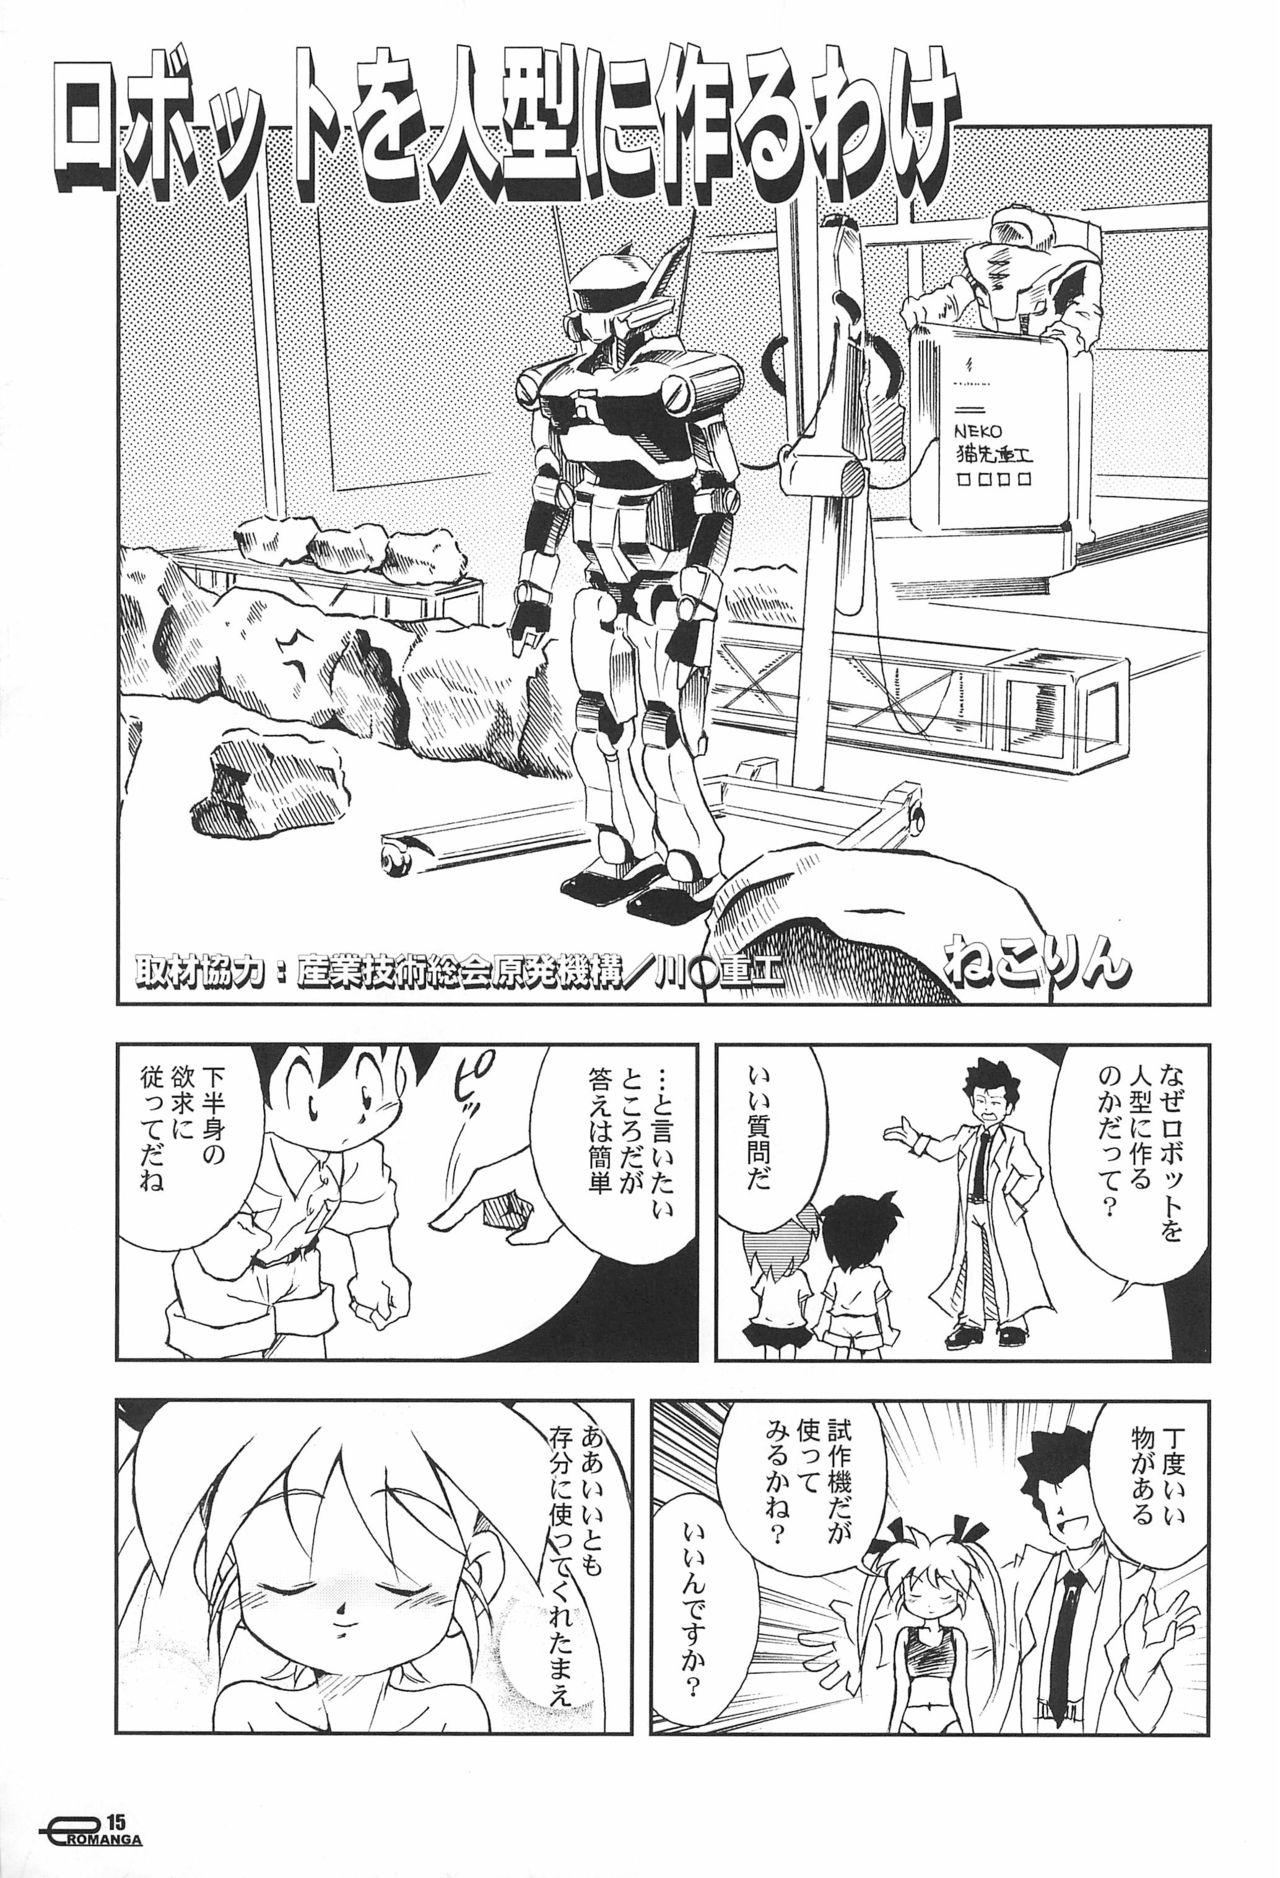 Manga Science 5 14